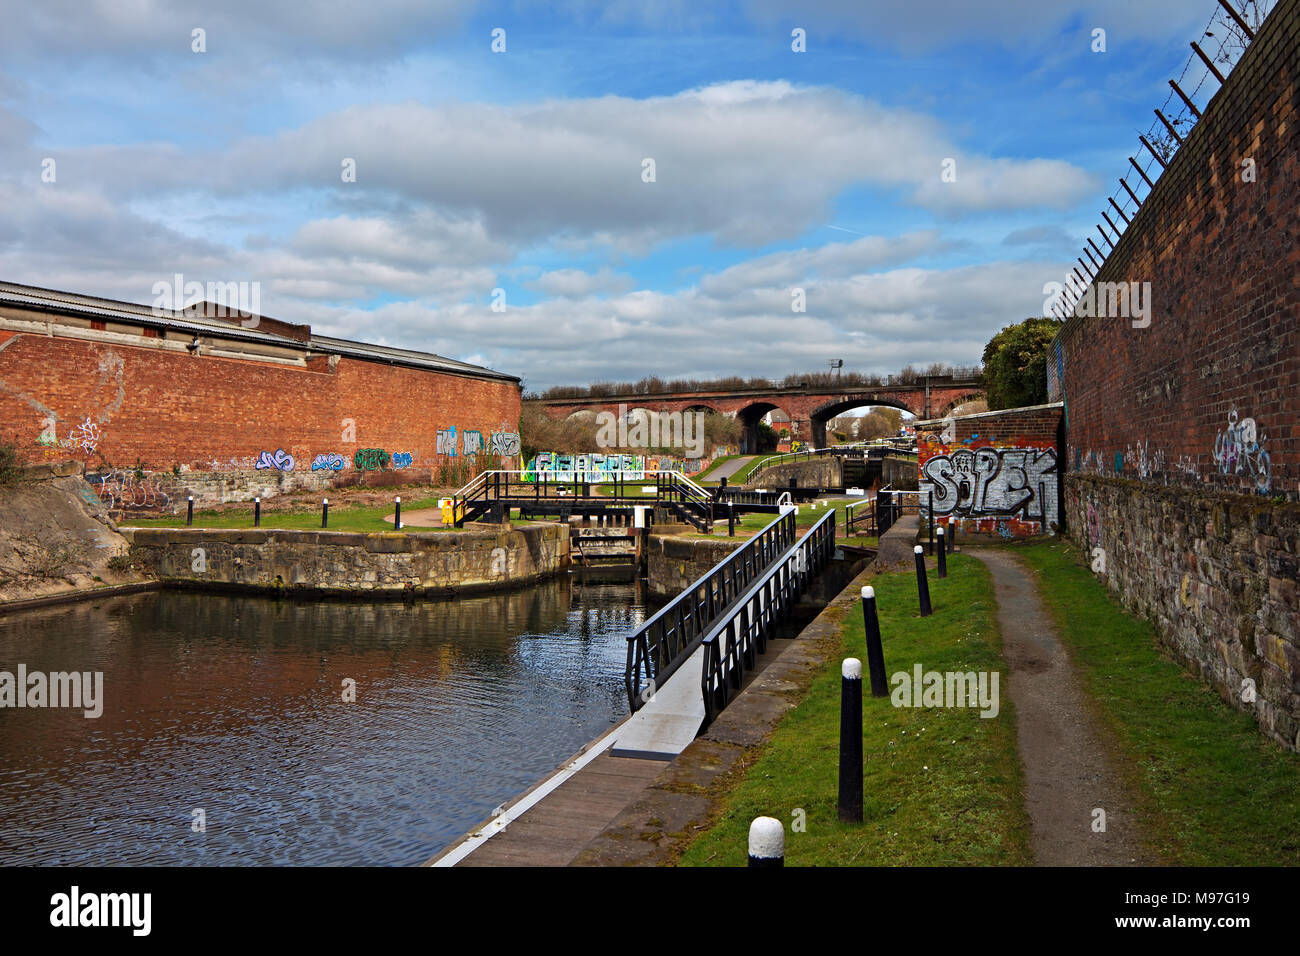 Die Leeds & Liverpool Canal an Stanley Dock Schlösser Liverpool gerade grundlegend Regeneration und Instandhaltungsprogramm. Stockfoto